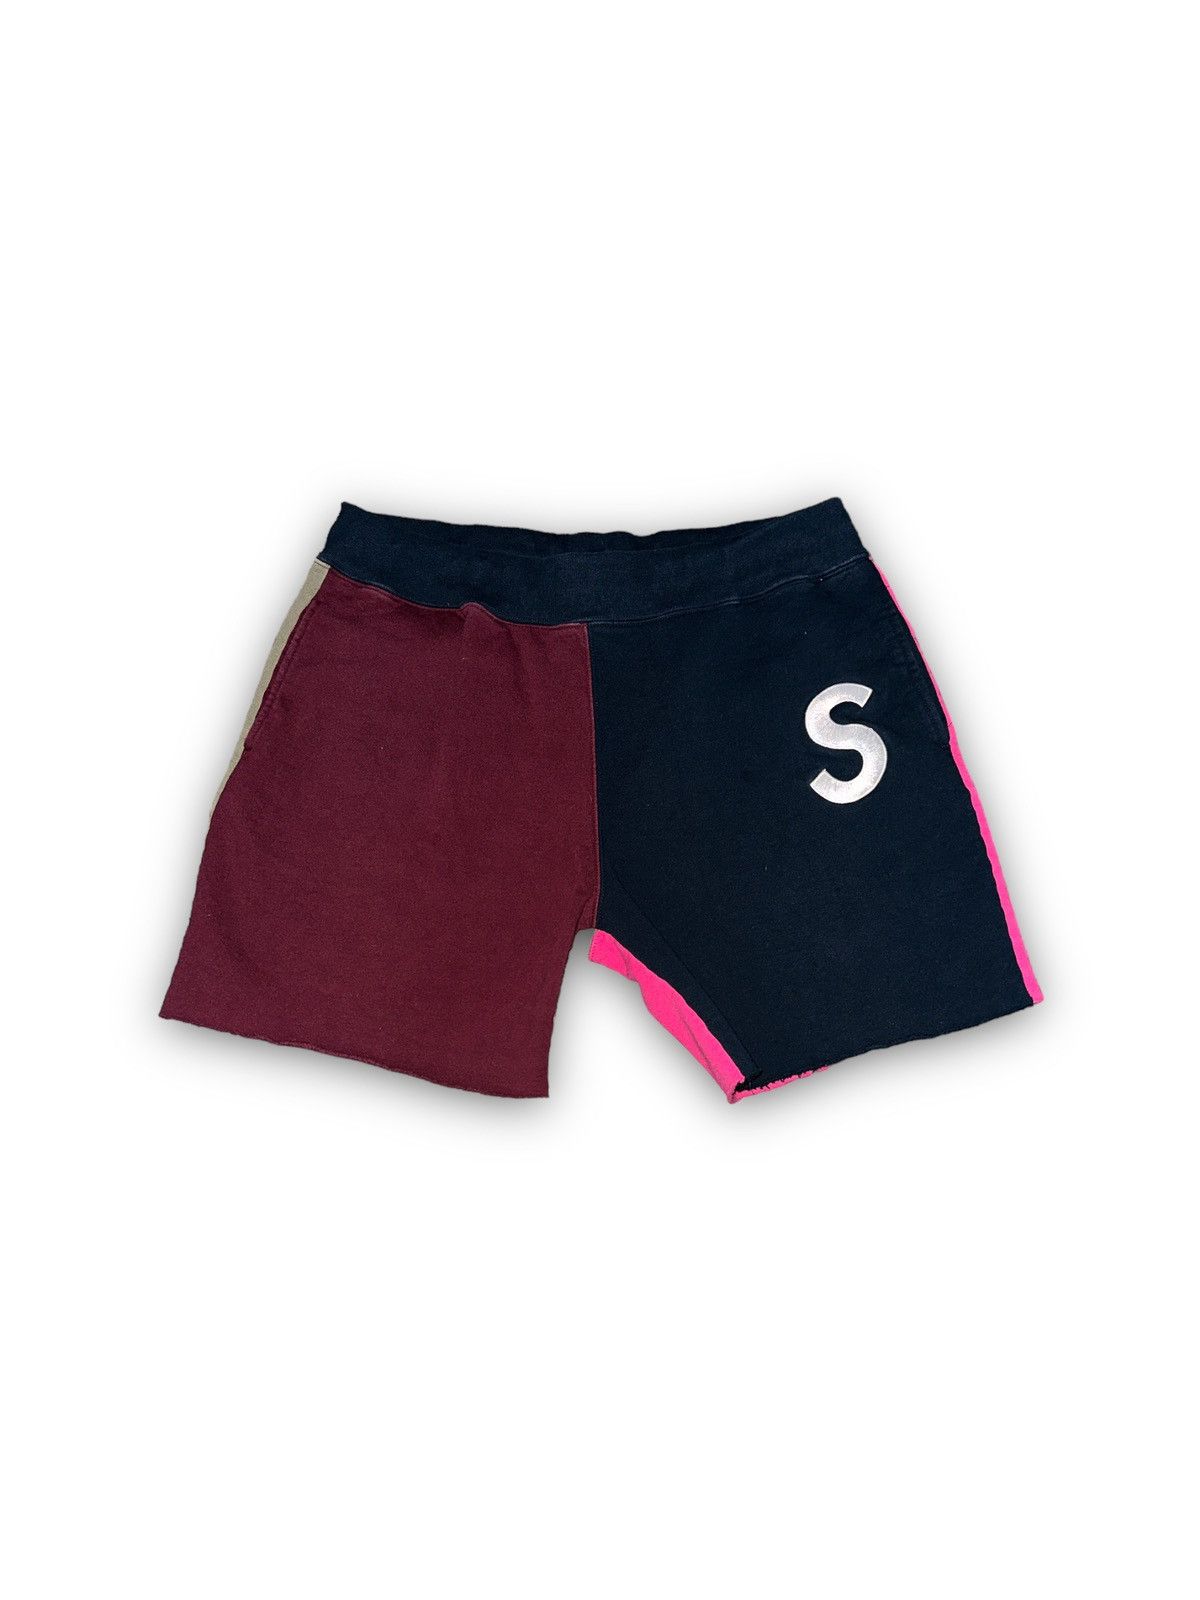 Supreme Supreme S logo color block shorts | Grailed